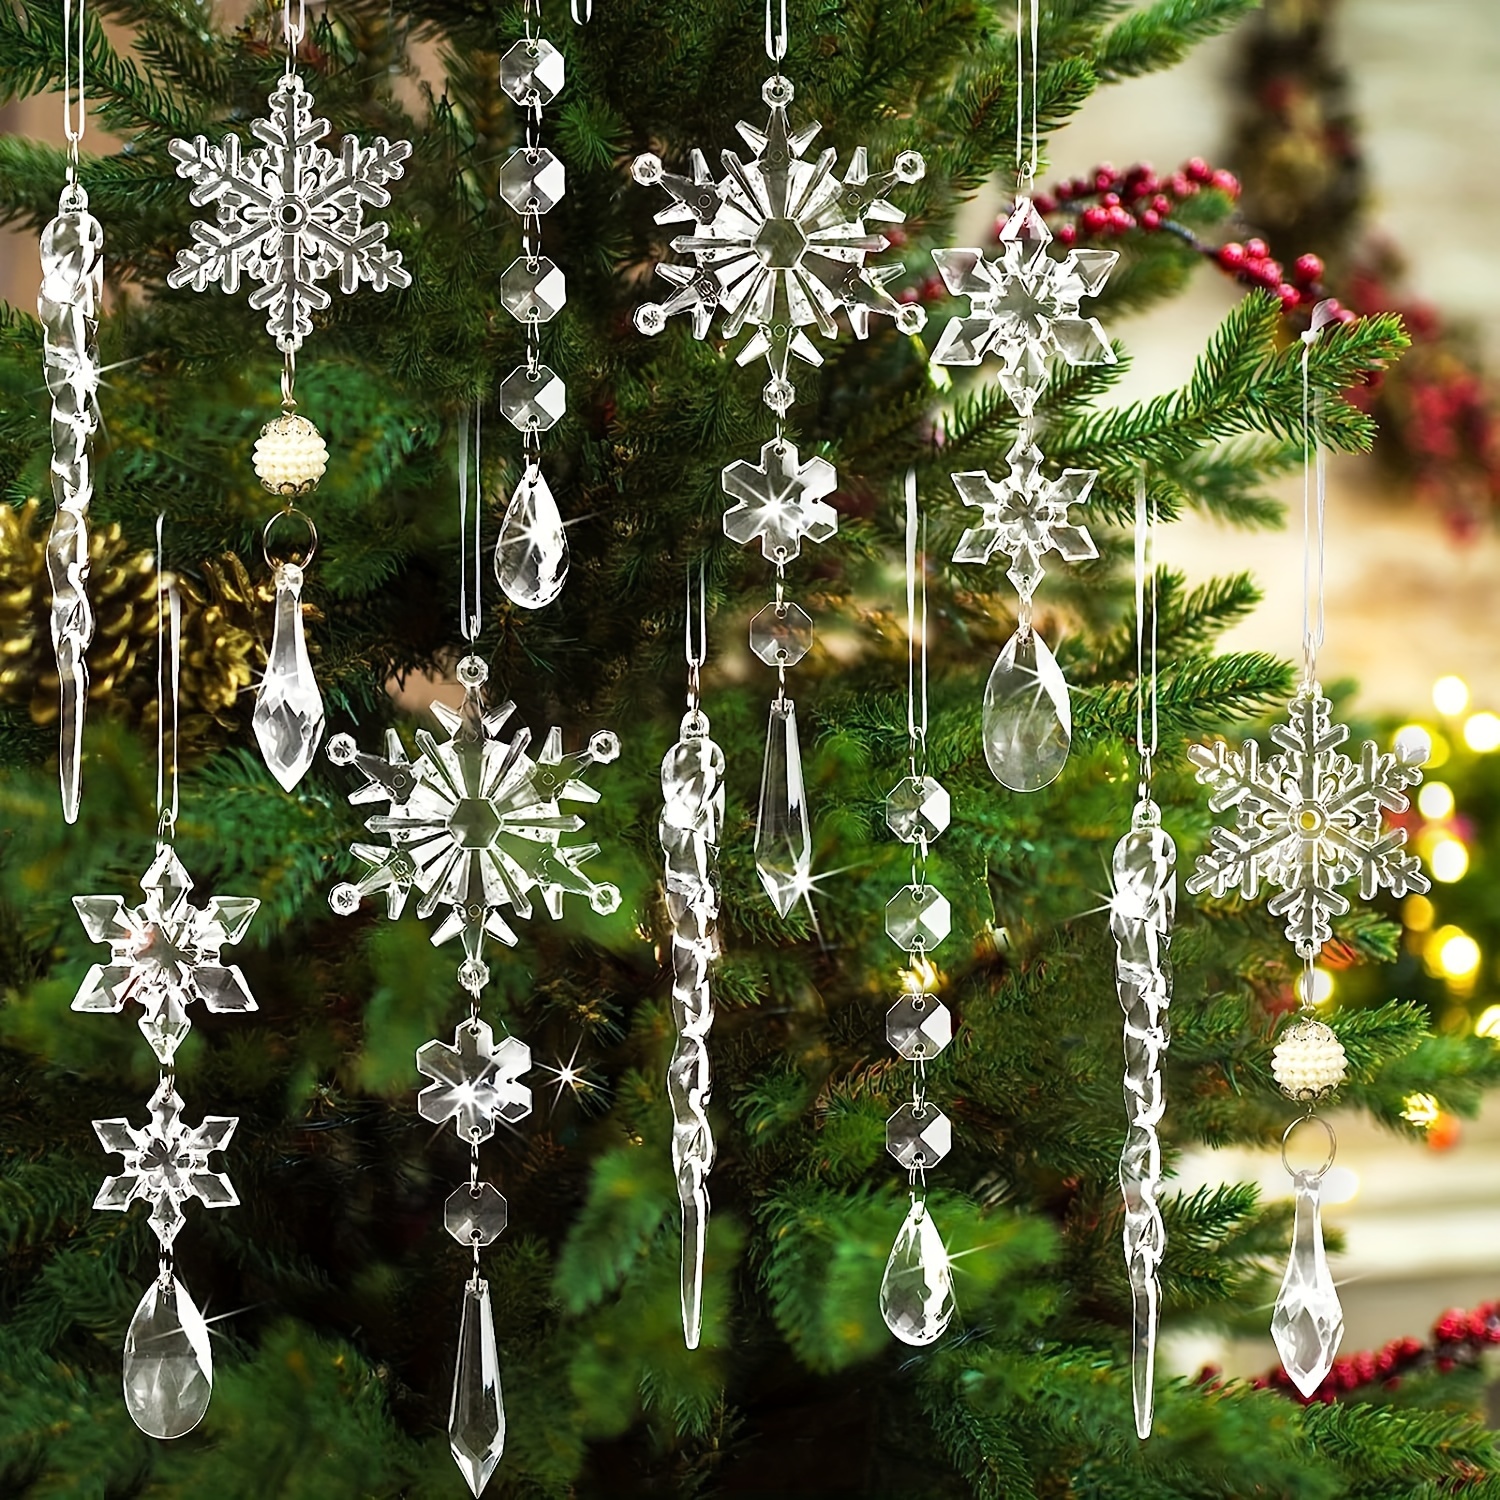 Creare dei fiocchi di neve decorativi per appenderli in casa in inverno o  tra i rami dell'albero di Natale.